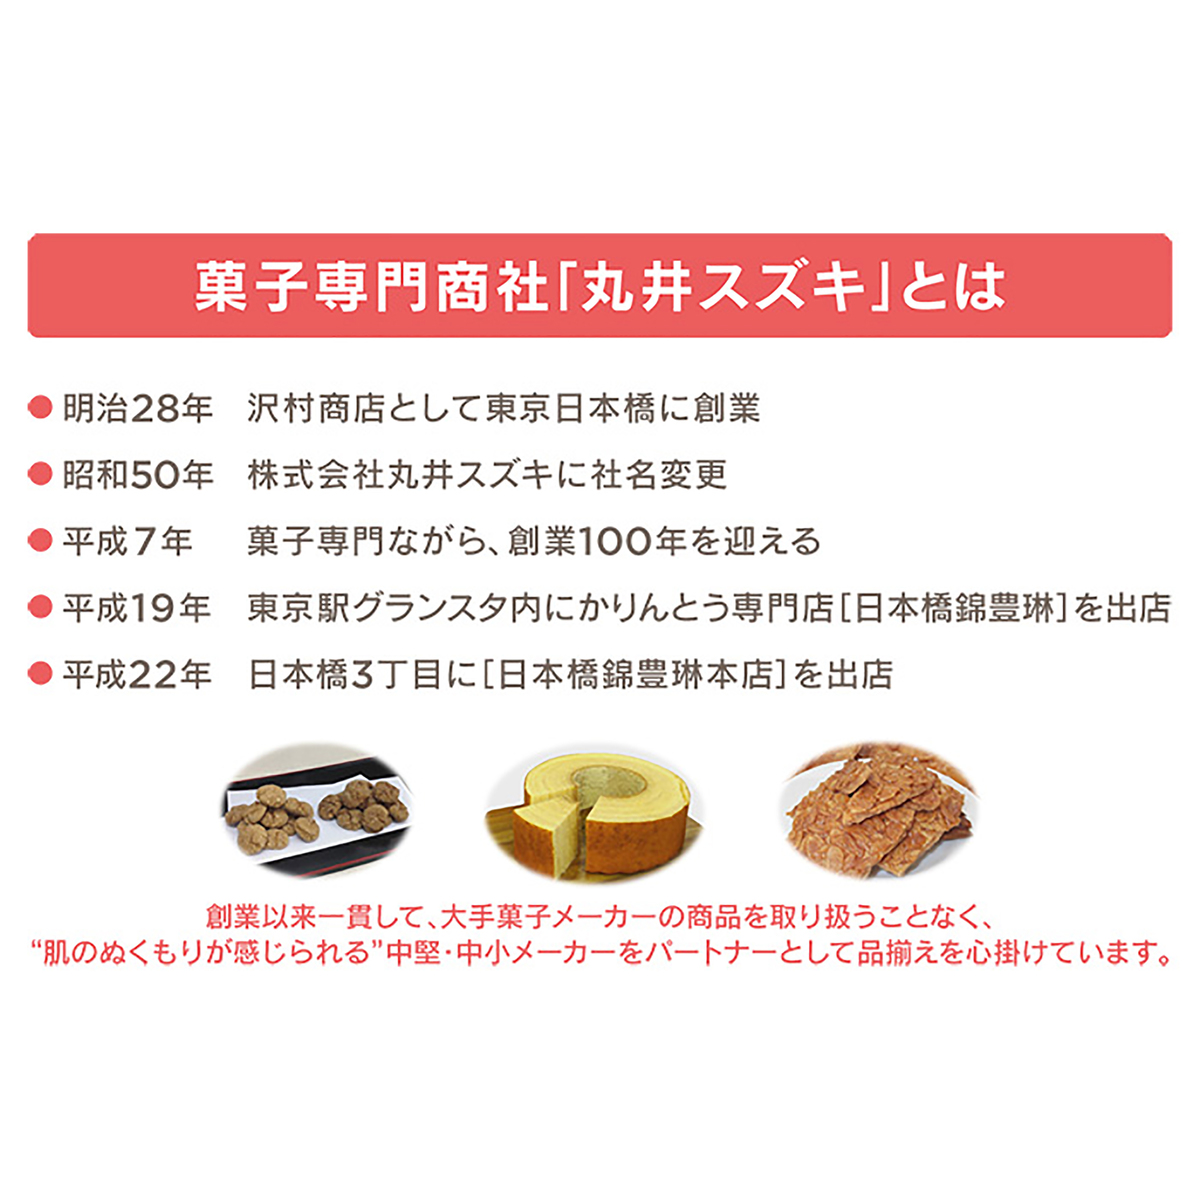 訳ありシリーズ 醤油煎餅ミックス「無選別」 6袋 - QVC.jp